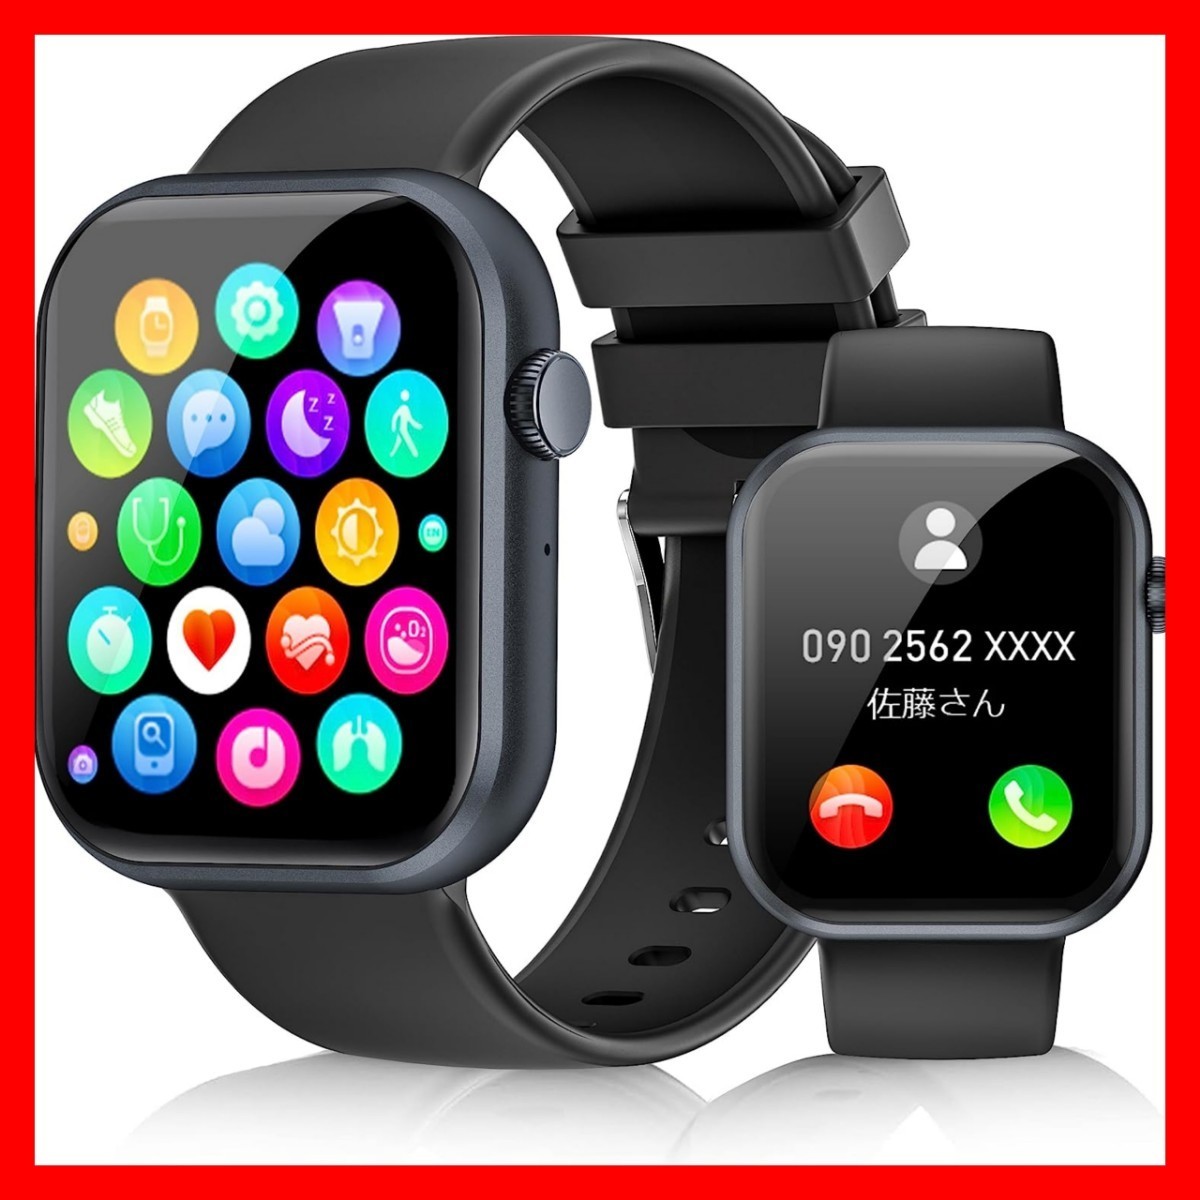 ◆本体 新品 スマートウォッチ 着信通知 黒 ブラック 防水 1.85インチ大画面 Bluetooth 多機能 腕時計_画像1